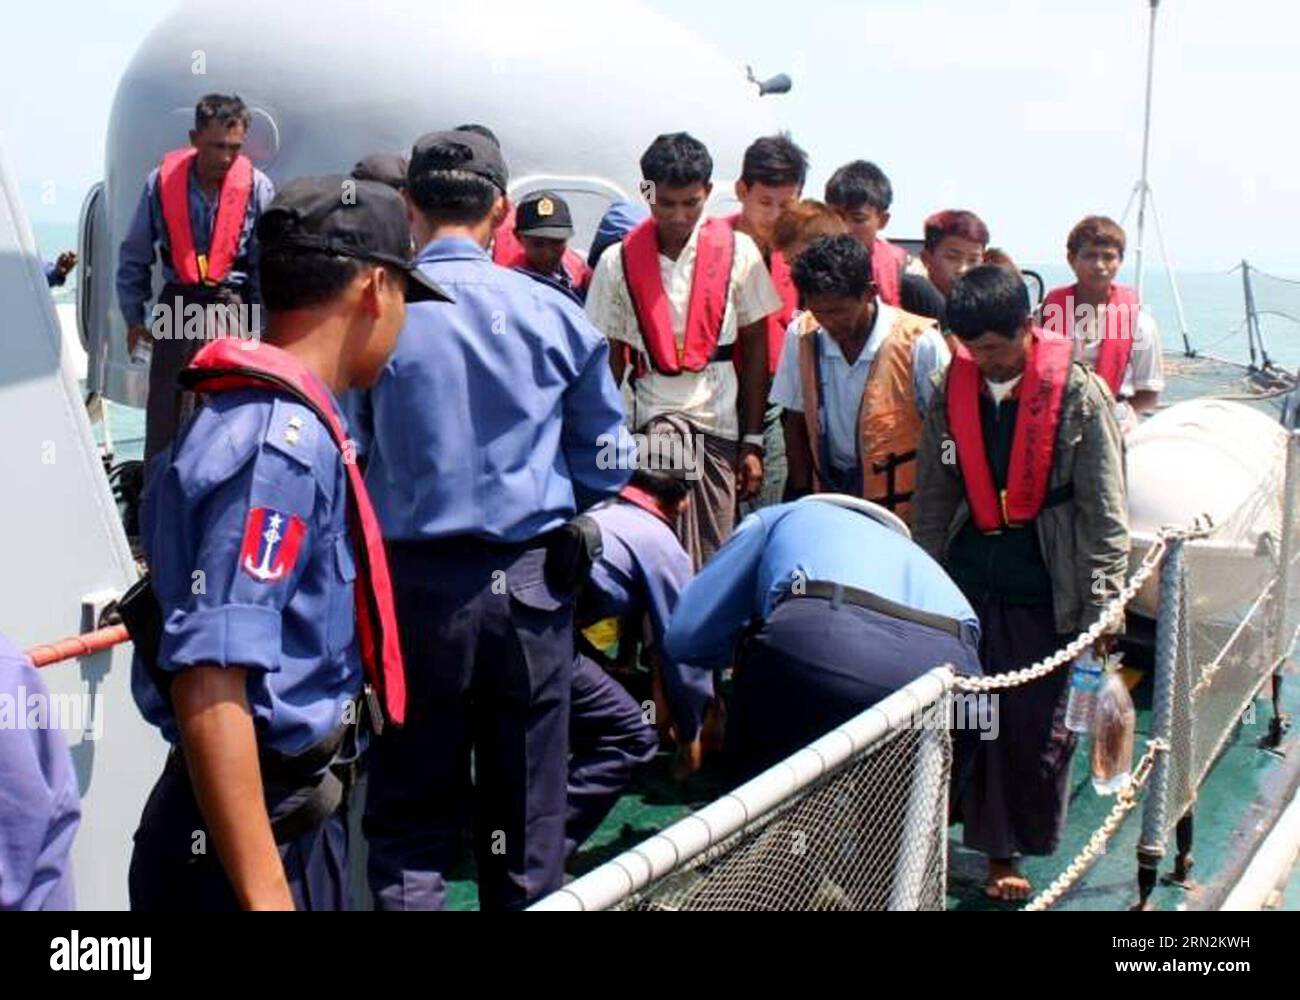 (150314) -- RAKHINE, 14 marzo 2015 -- i soccorritori aiutano i sopravvissuti all'incidente di affondamento della nave nello Stato occidentale di Rakhine in Myanmar, 14 marzo 2015. Almeno 21 persone sono morte e altre 47 sono scomparse, tra cui 30 donne, affondate al largo di Kyaukphyu, una grande città dello Stato di Rakhine occidentale del Myanmar, venerdì sera, fonti ufficiali confermate sabato. ) (Zjy) MYANMAR-RAKHINE-VESSEL SINKAGE-RESCUE MyanmarxNewsxAgency PUBLICATIONxNOTxINxCHN Rakhine 14 marzo 2015 salvataggio aiutare i sopravvissuti dell'incidente navale nello Stato occidentale di Rakhine del Myanmar 14 marzo 2015 almeno 21 celebrità sono morte e.. Foto Stock